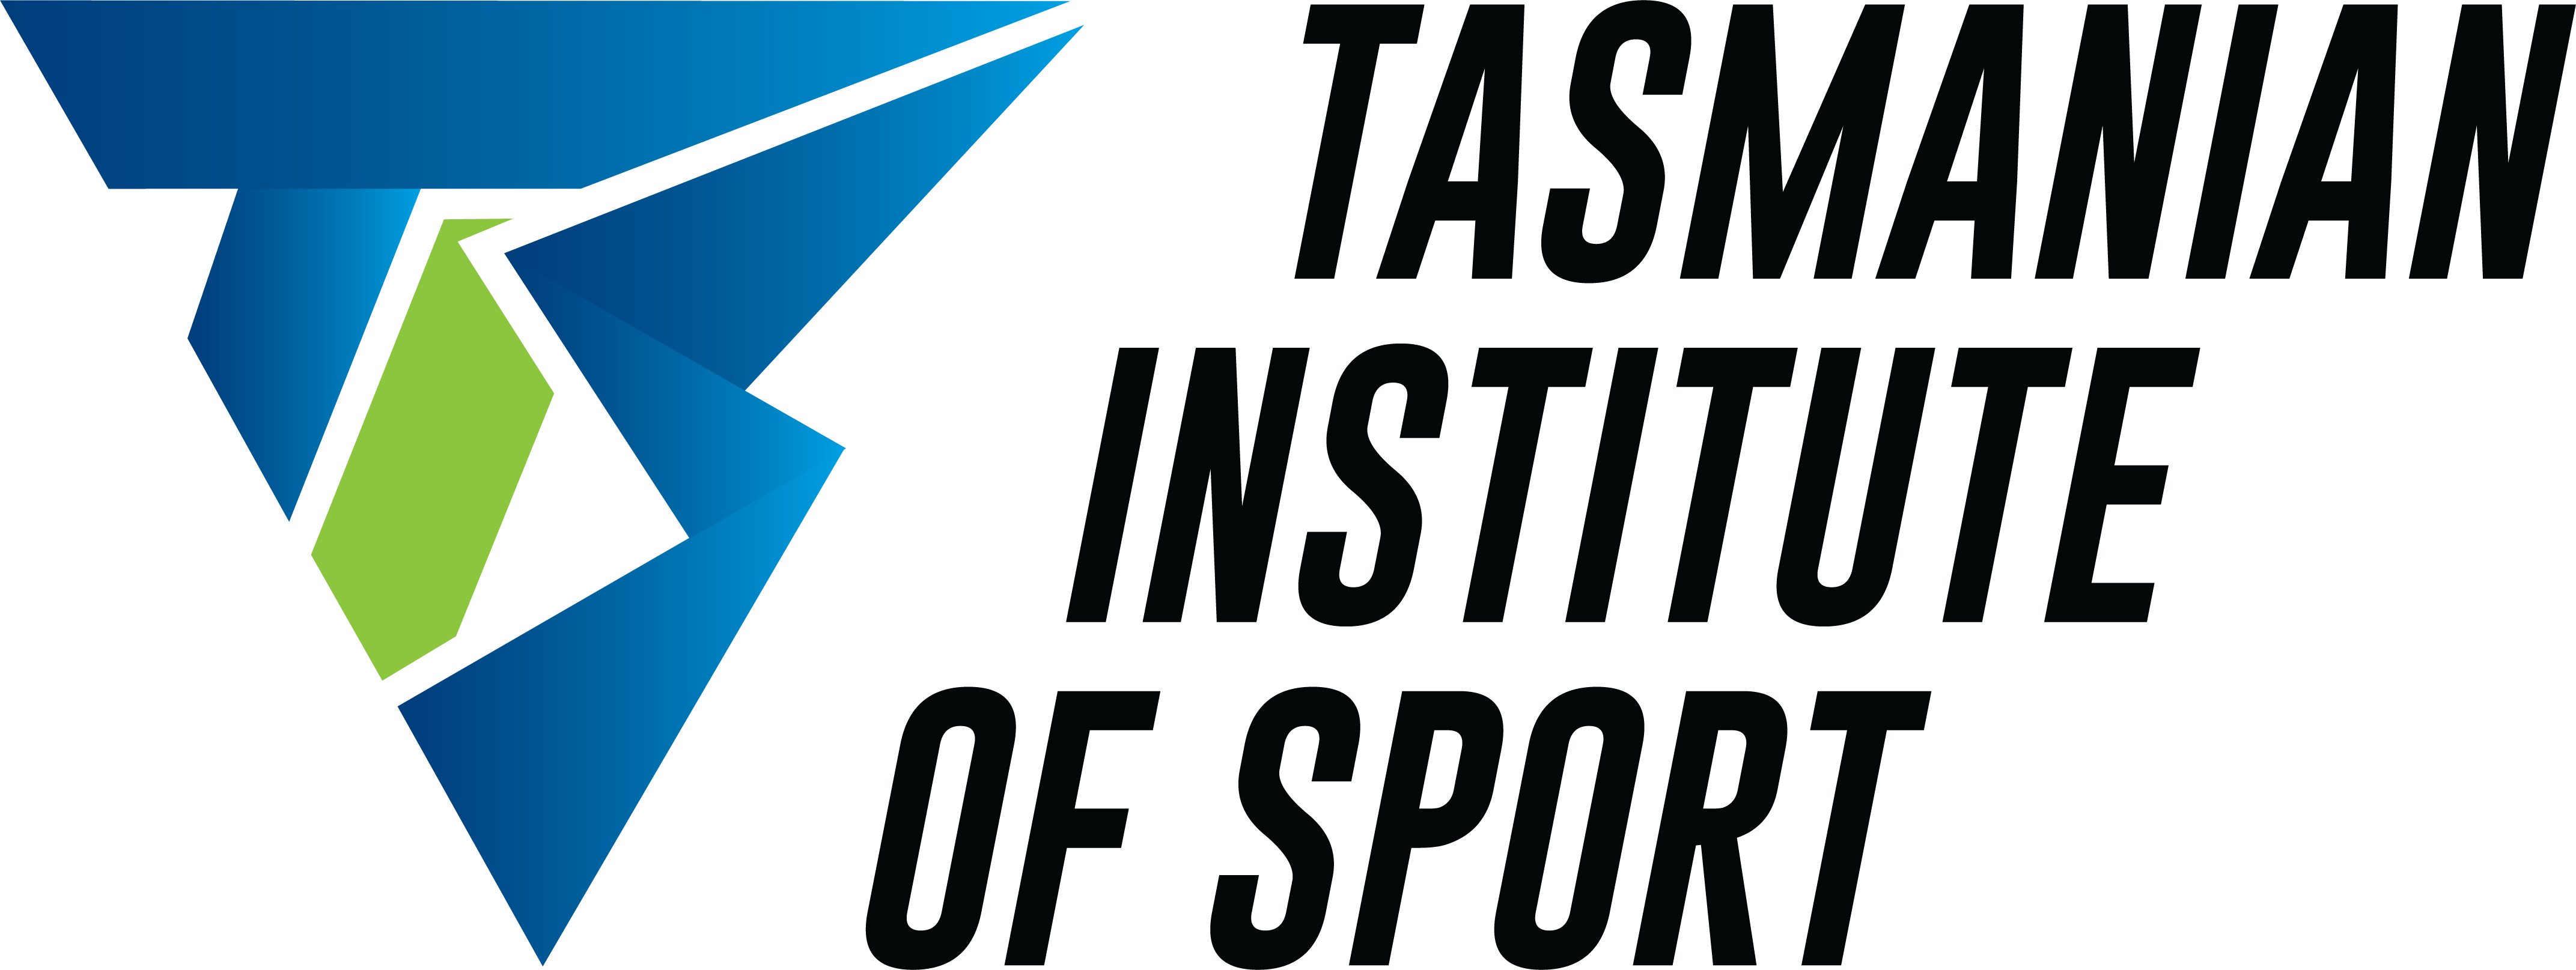 Tasmanian Institute of Sport